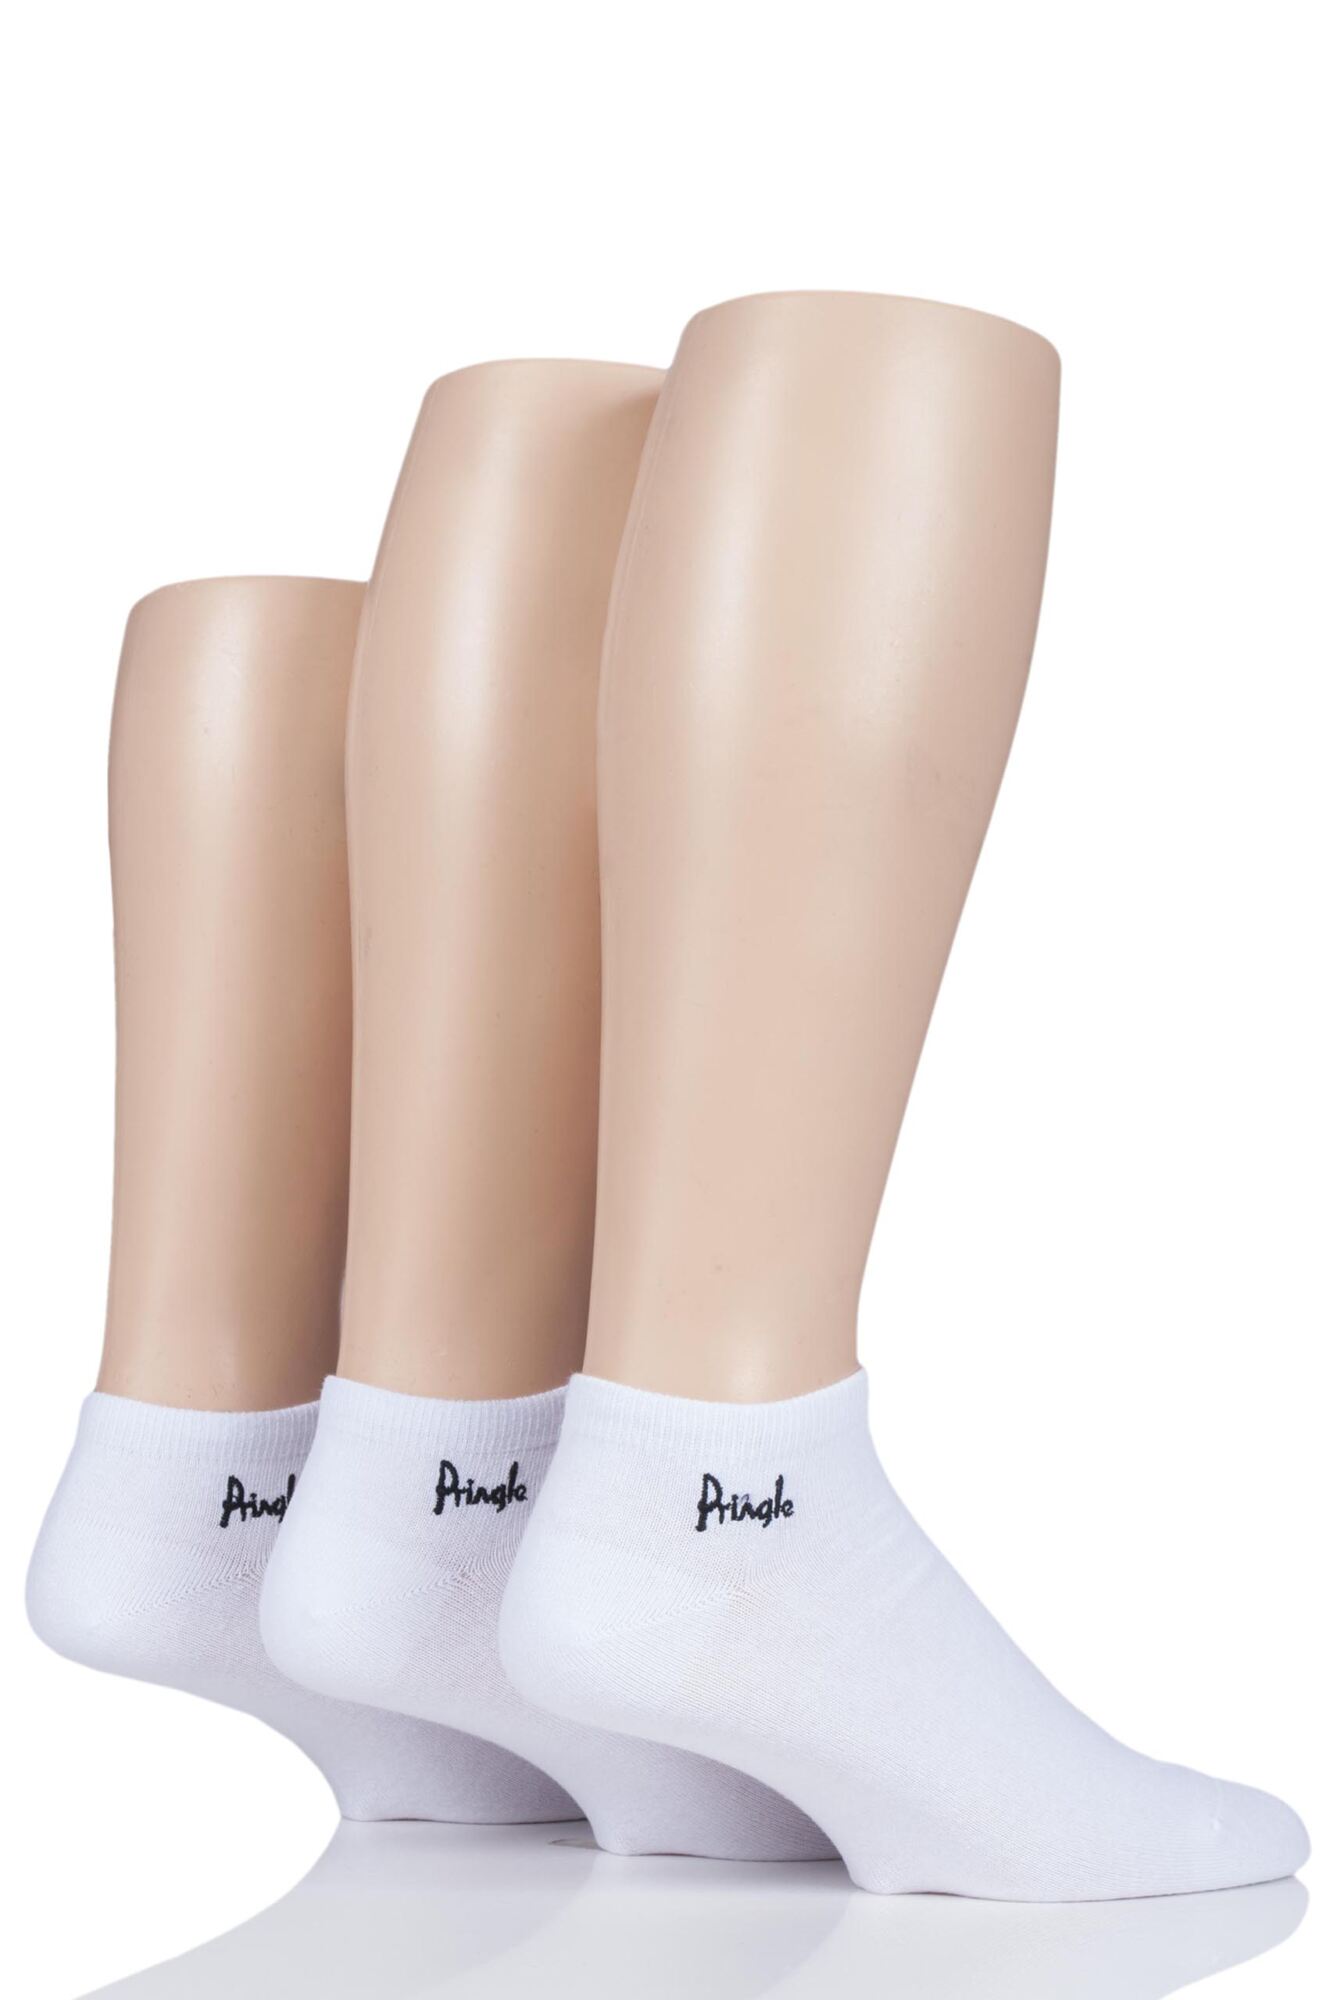 3 Pair Plain and Patterned Cotton Secret Socks Men's - Pringle